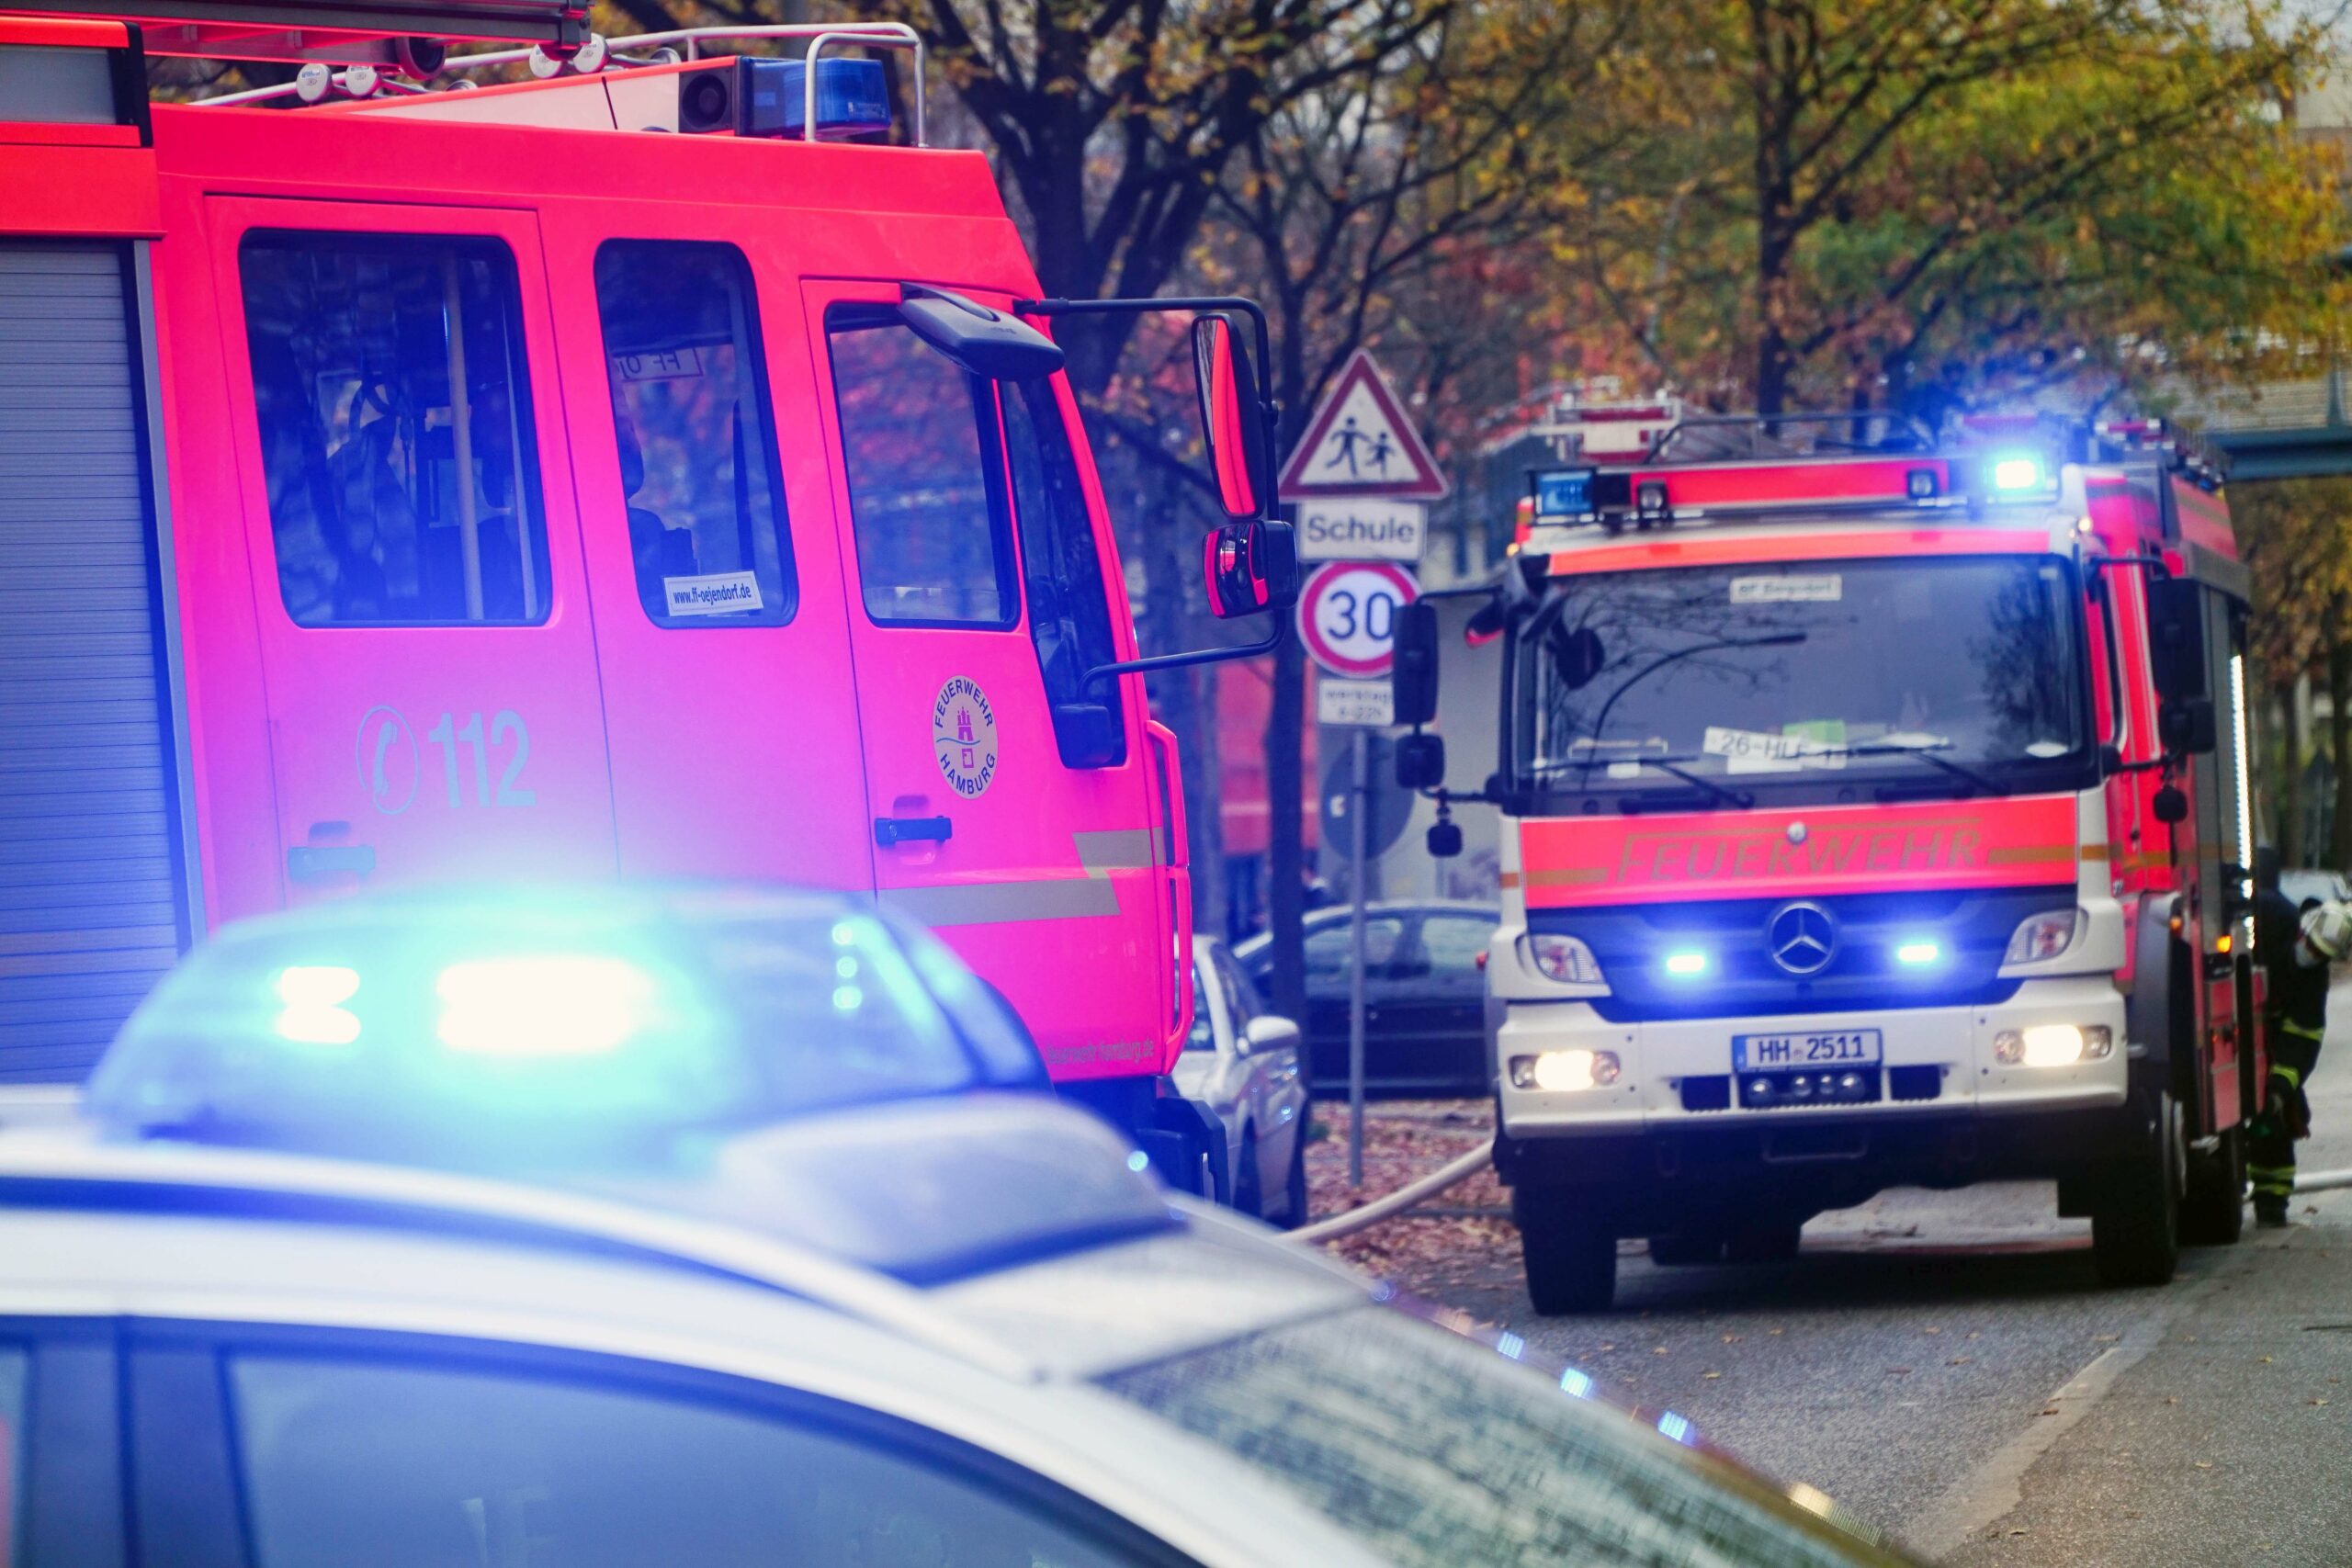 Wohnungsbrand in Hummelsbüttel: Feuerwehrmann verletzt in Klinik – Polizei ermittelt Brandursache